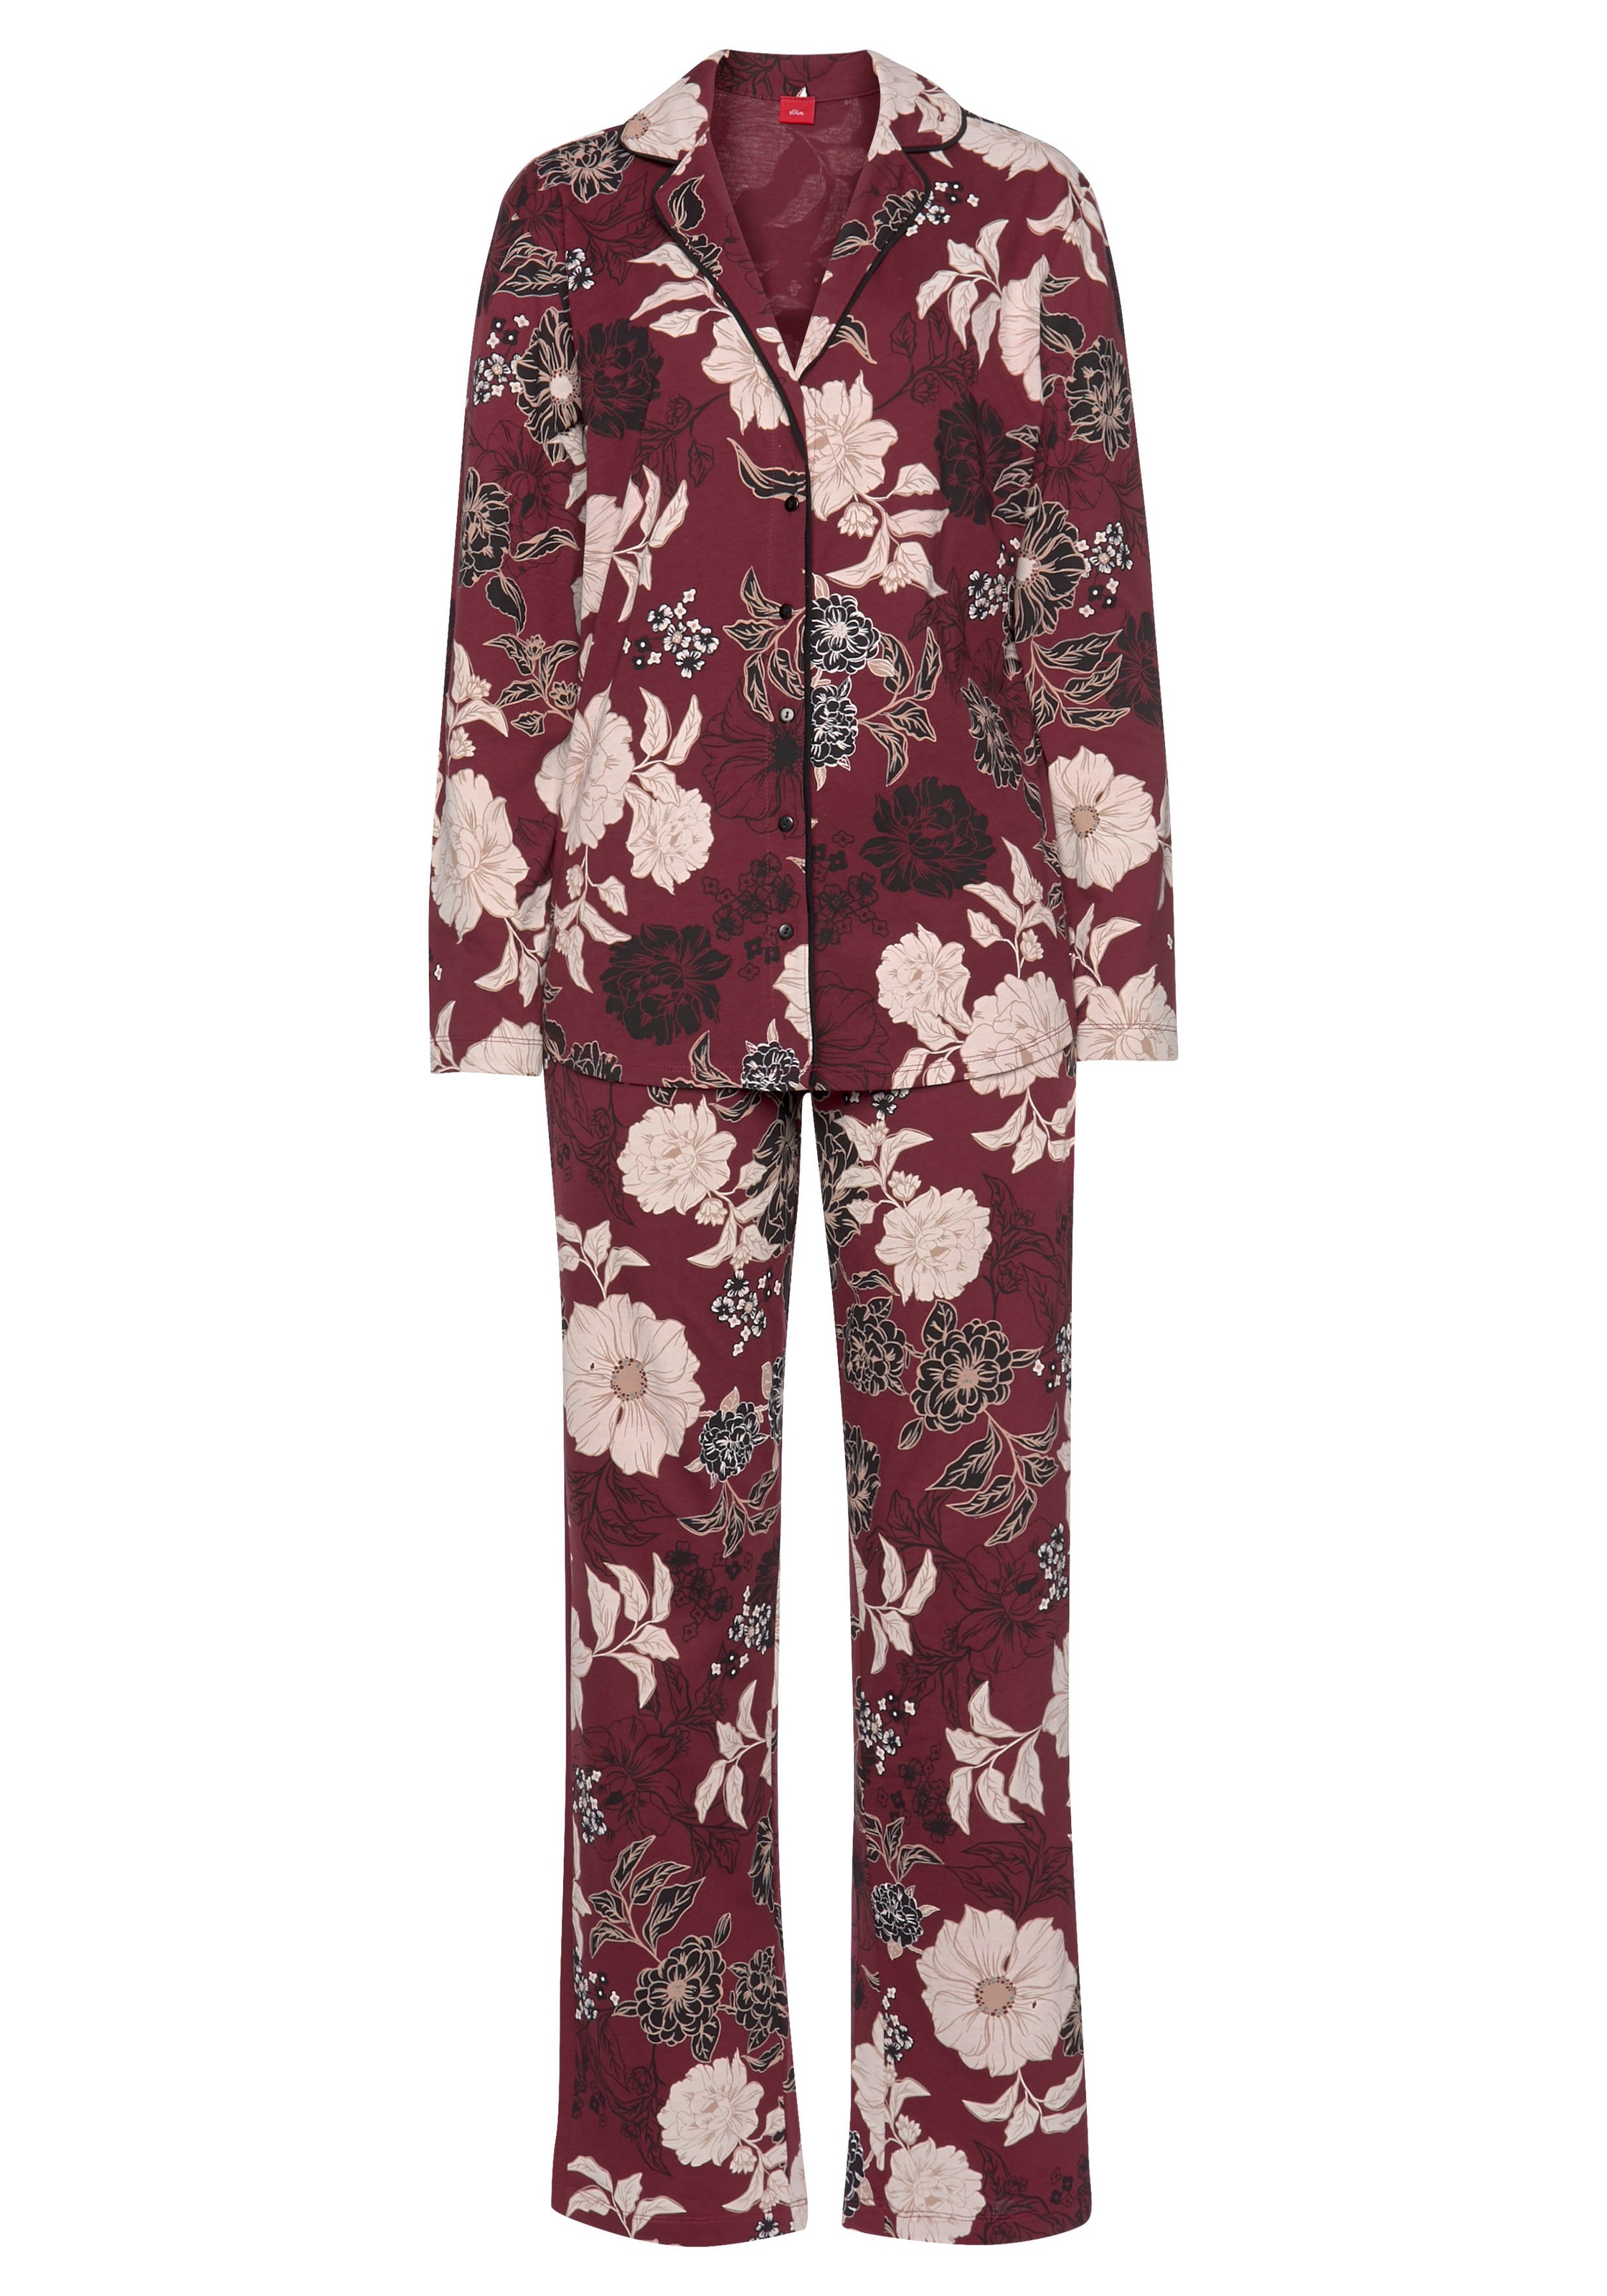 s.Oliver Pyjama, (2 tlg.), in klassischer Form mit Blumenmuster